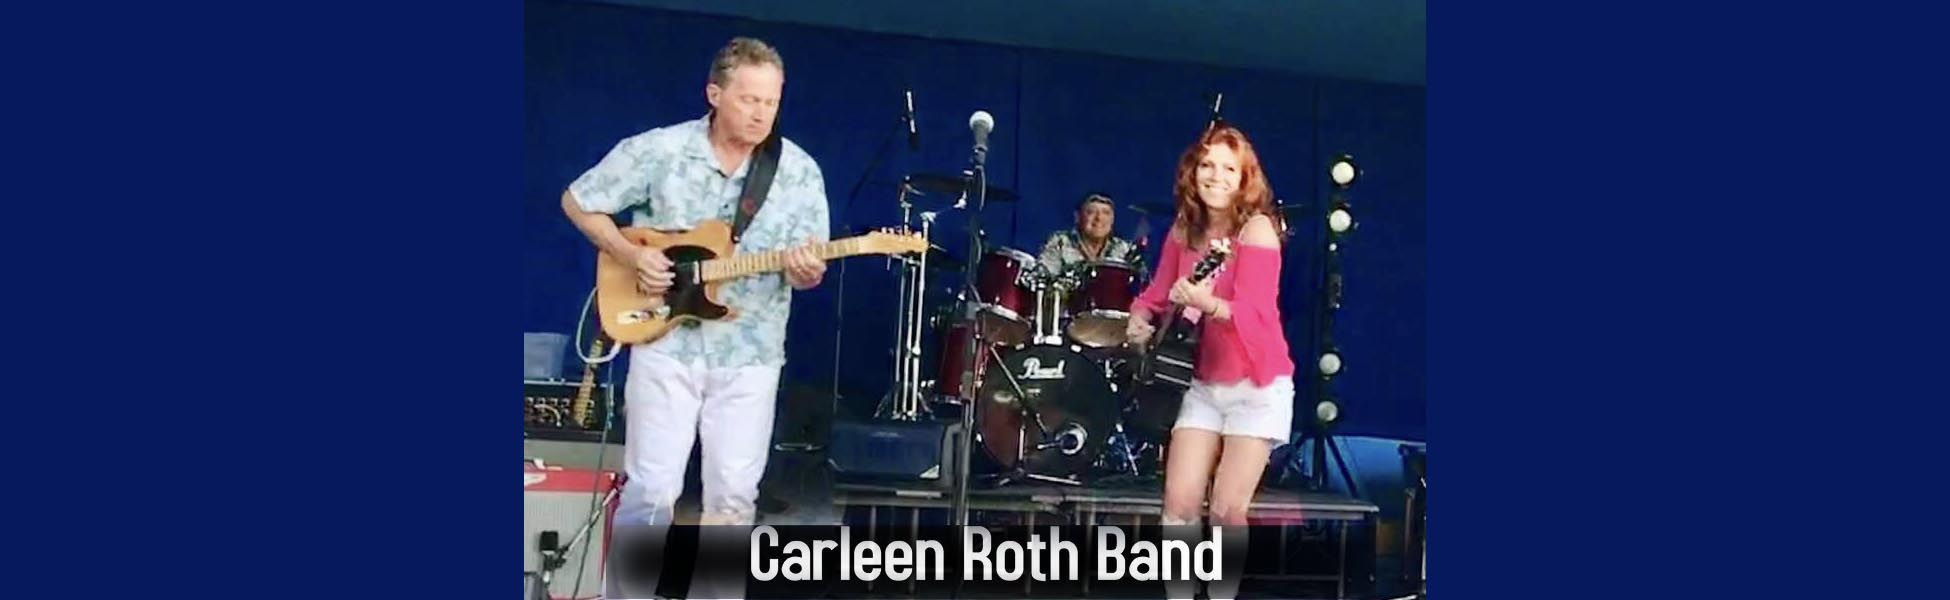 Carleen Roth Band